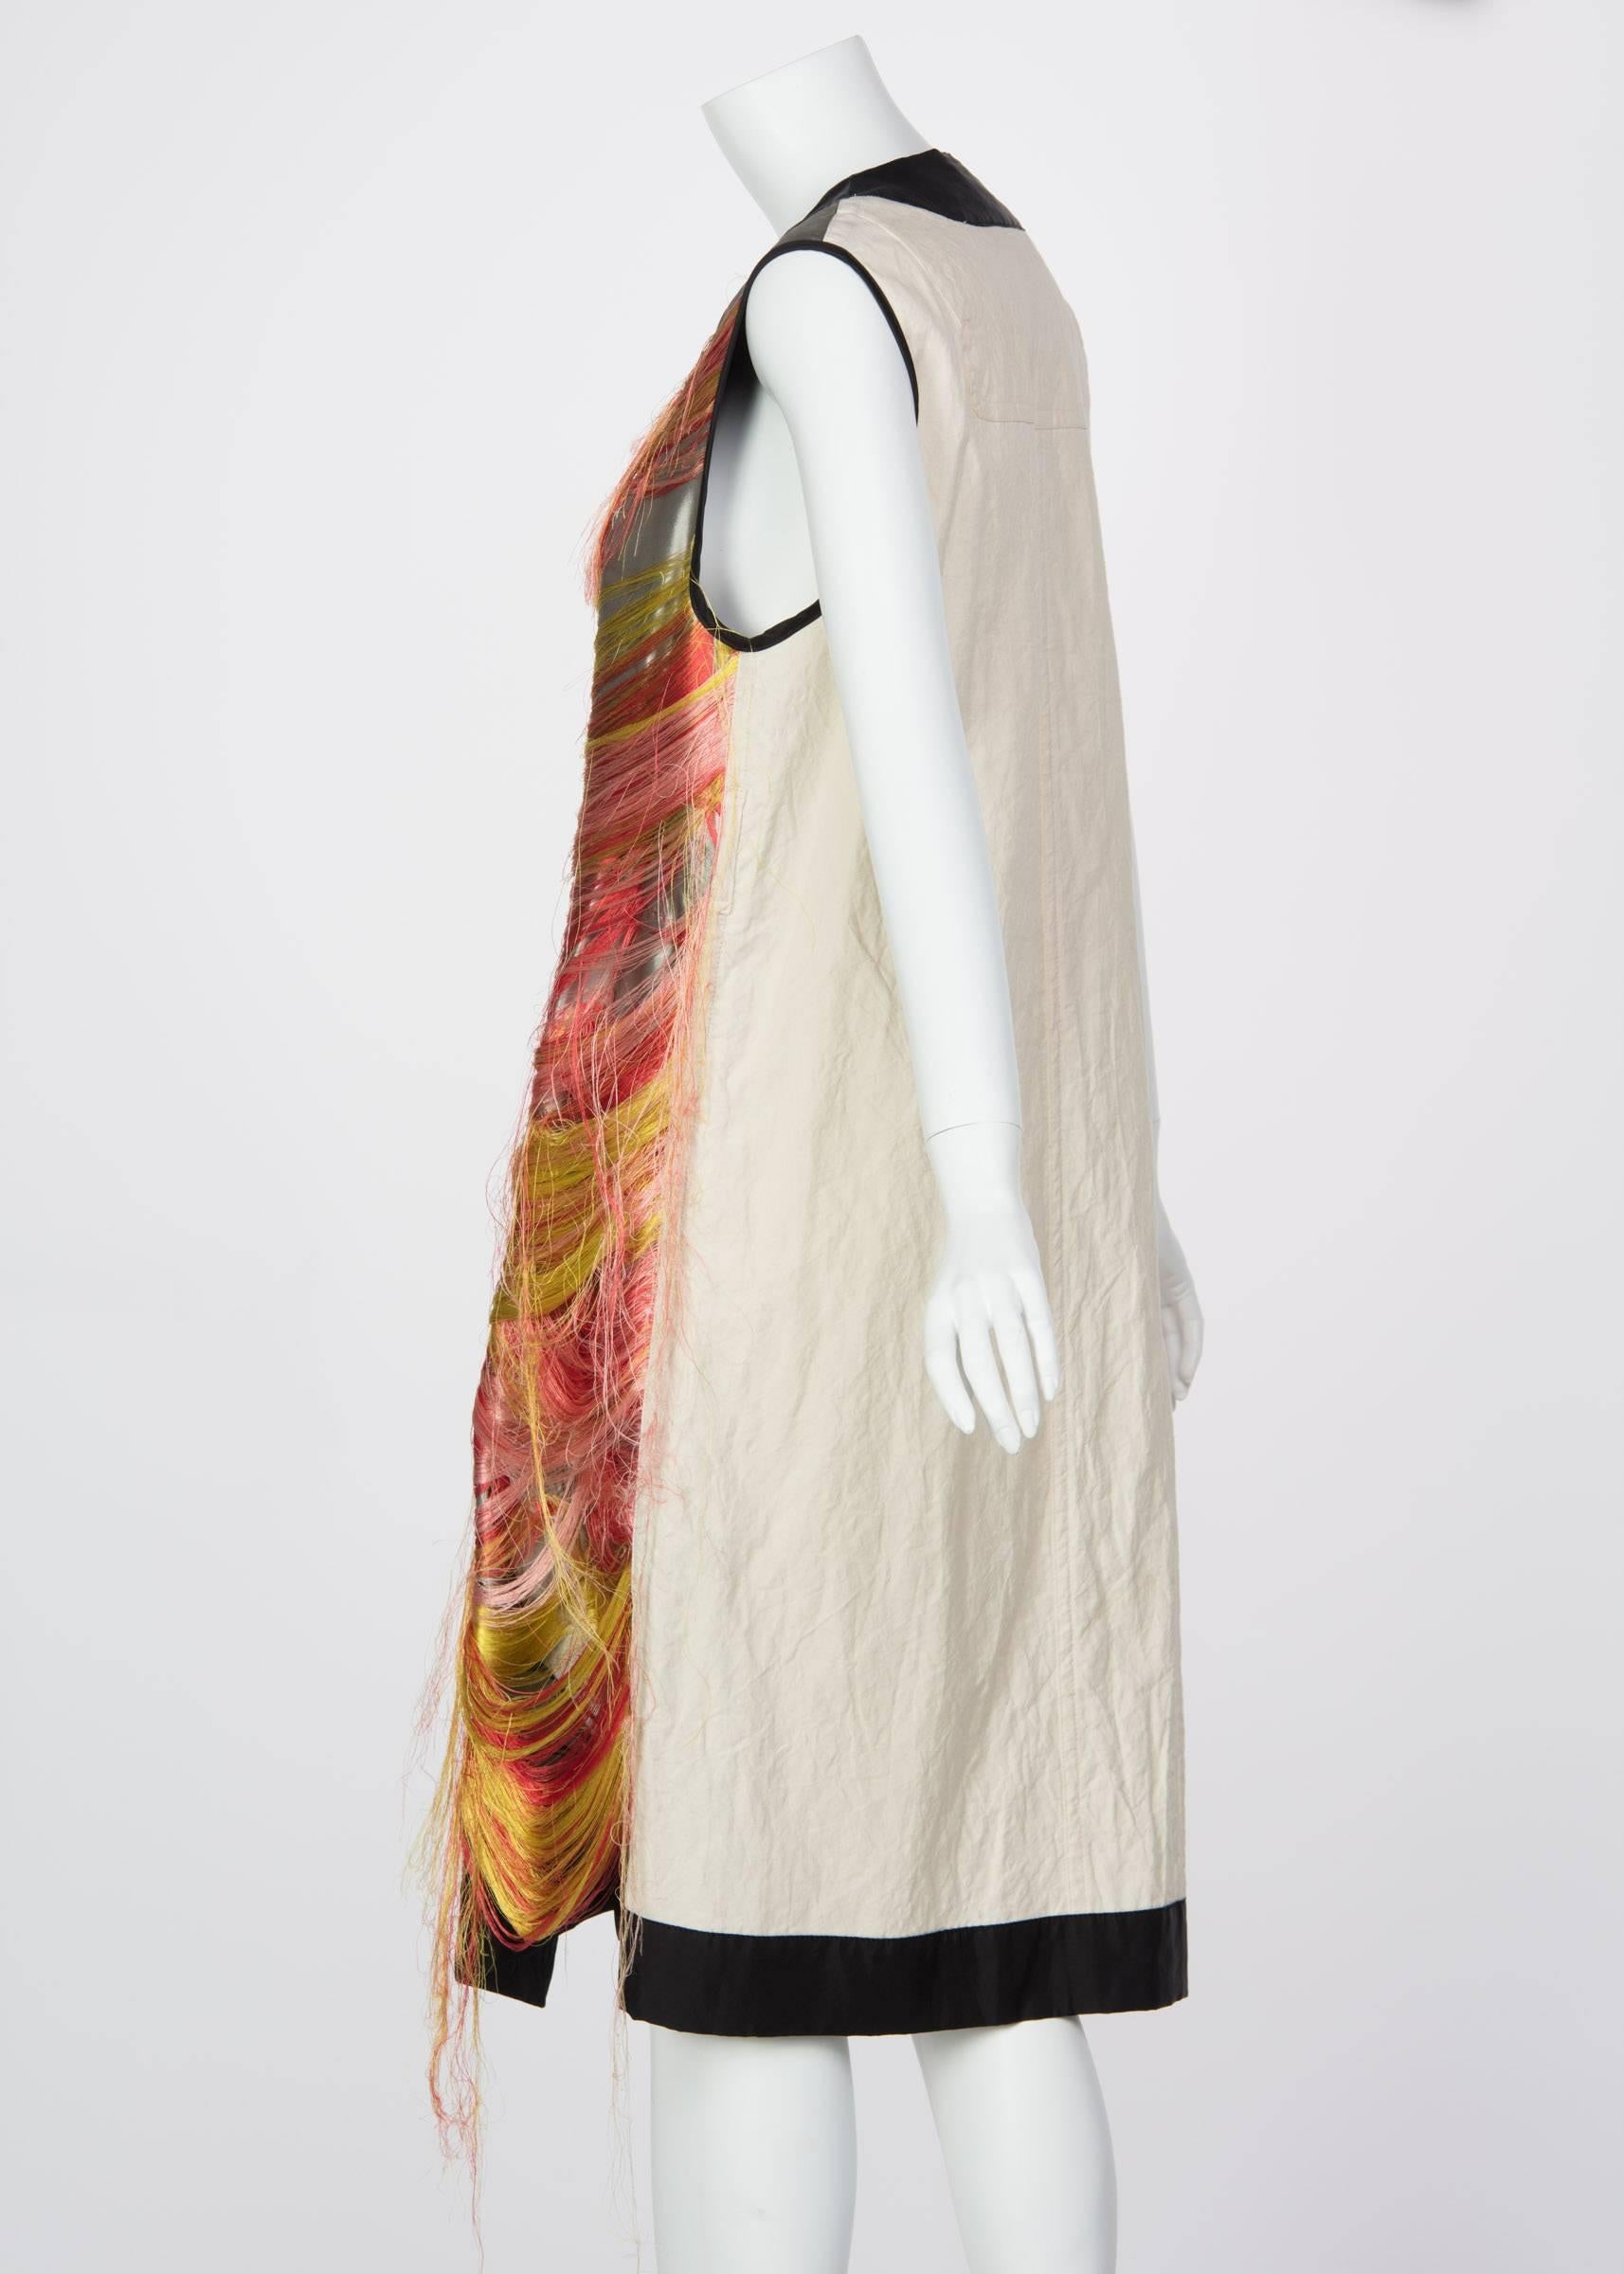 Dries Van Noten Spring Runway Look 30 Silk Thread Floral Brocade Vest, 2014  For Sale 1